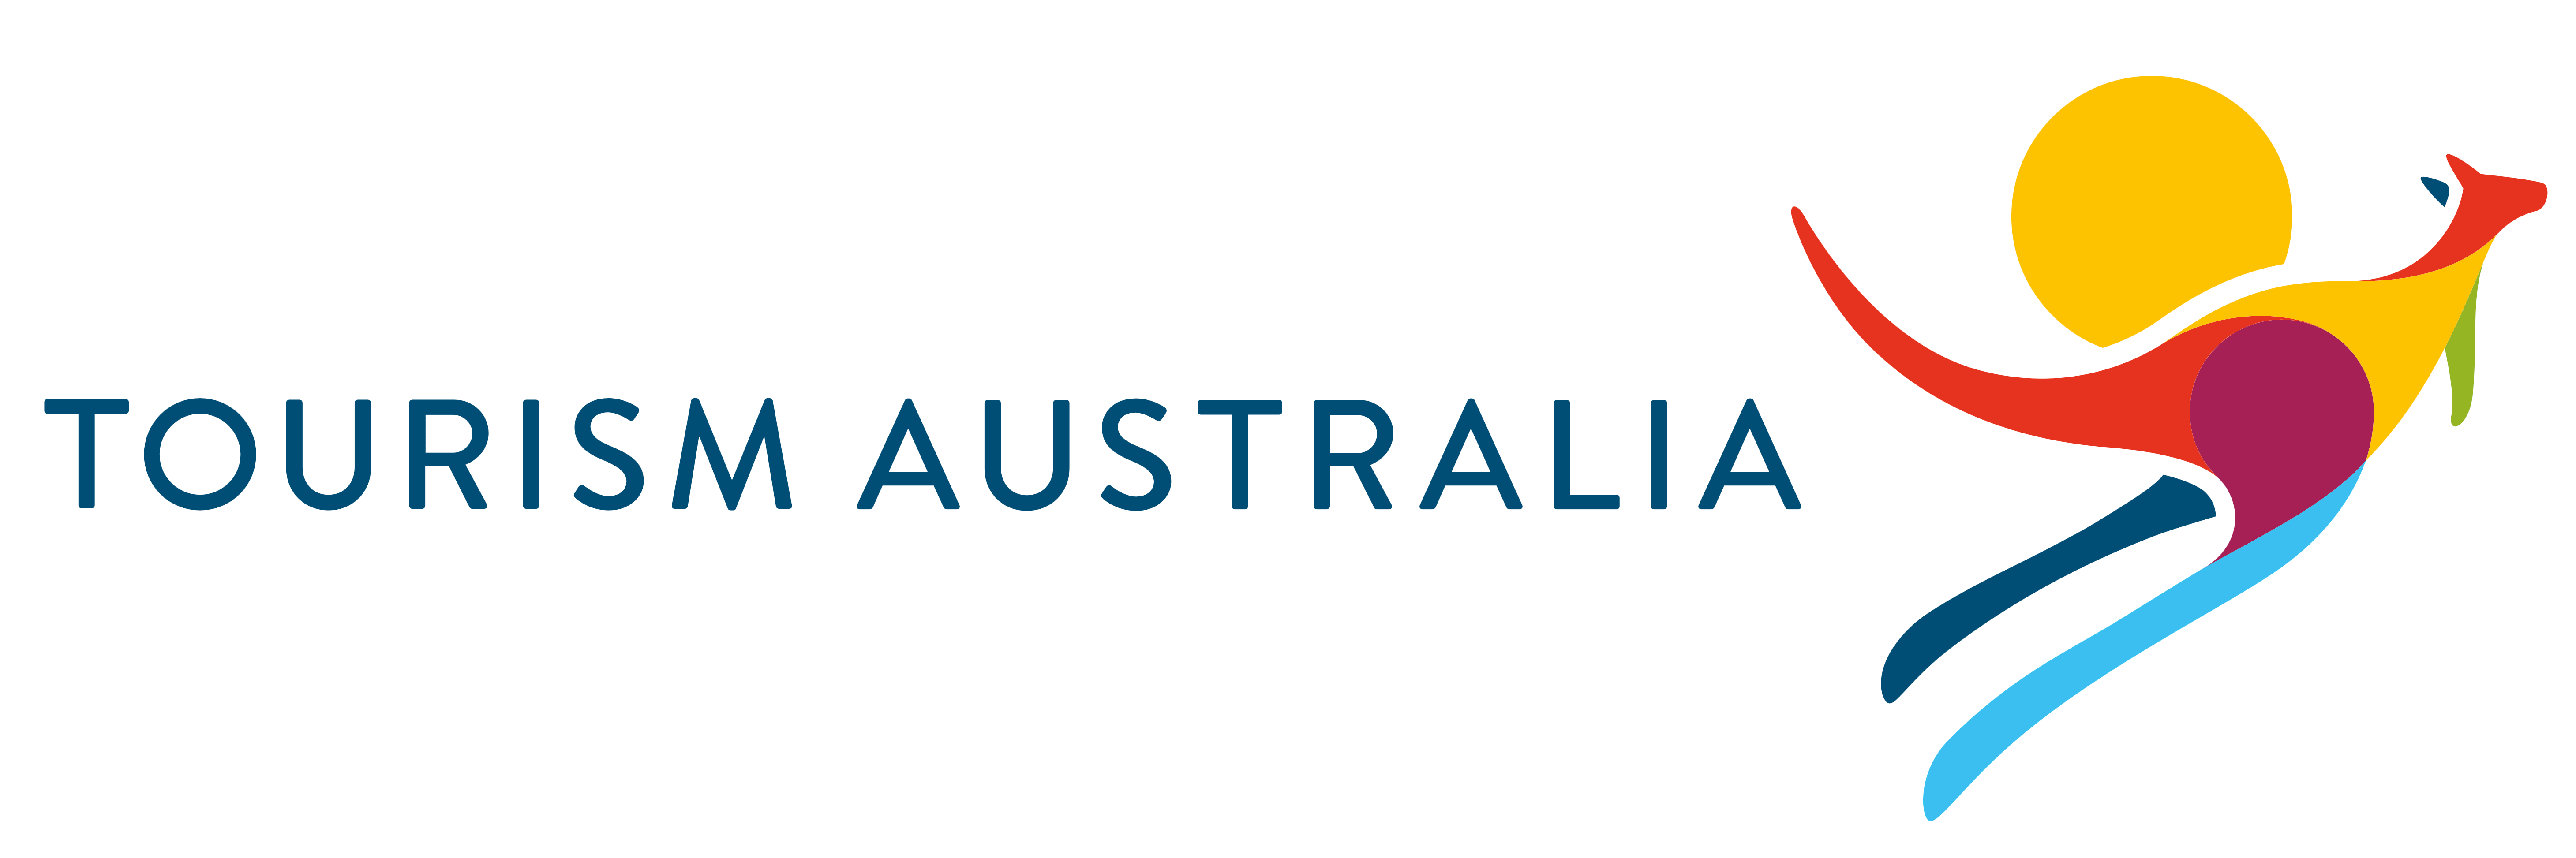 australia tourism logo – Travel Daily